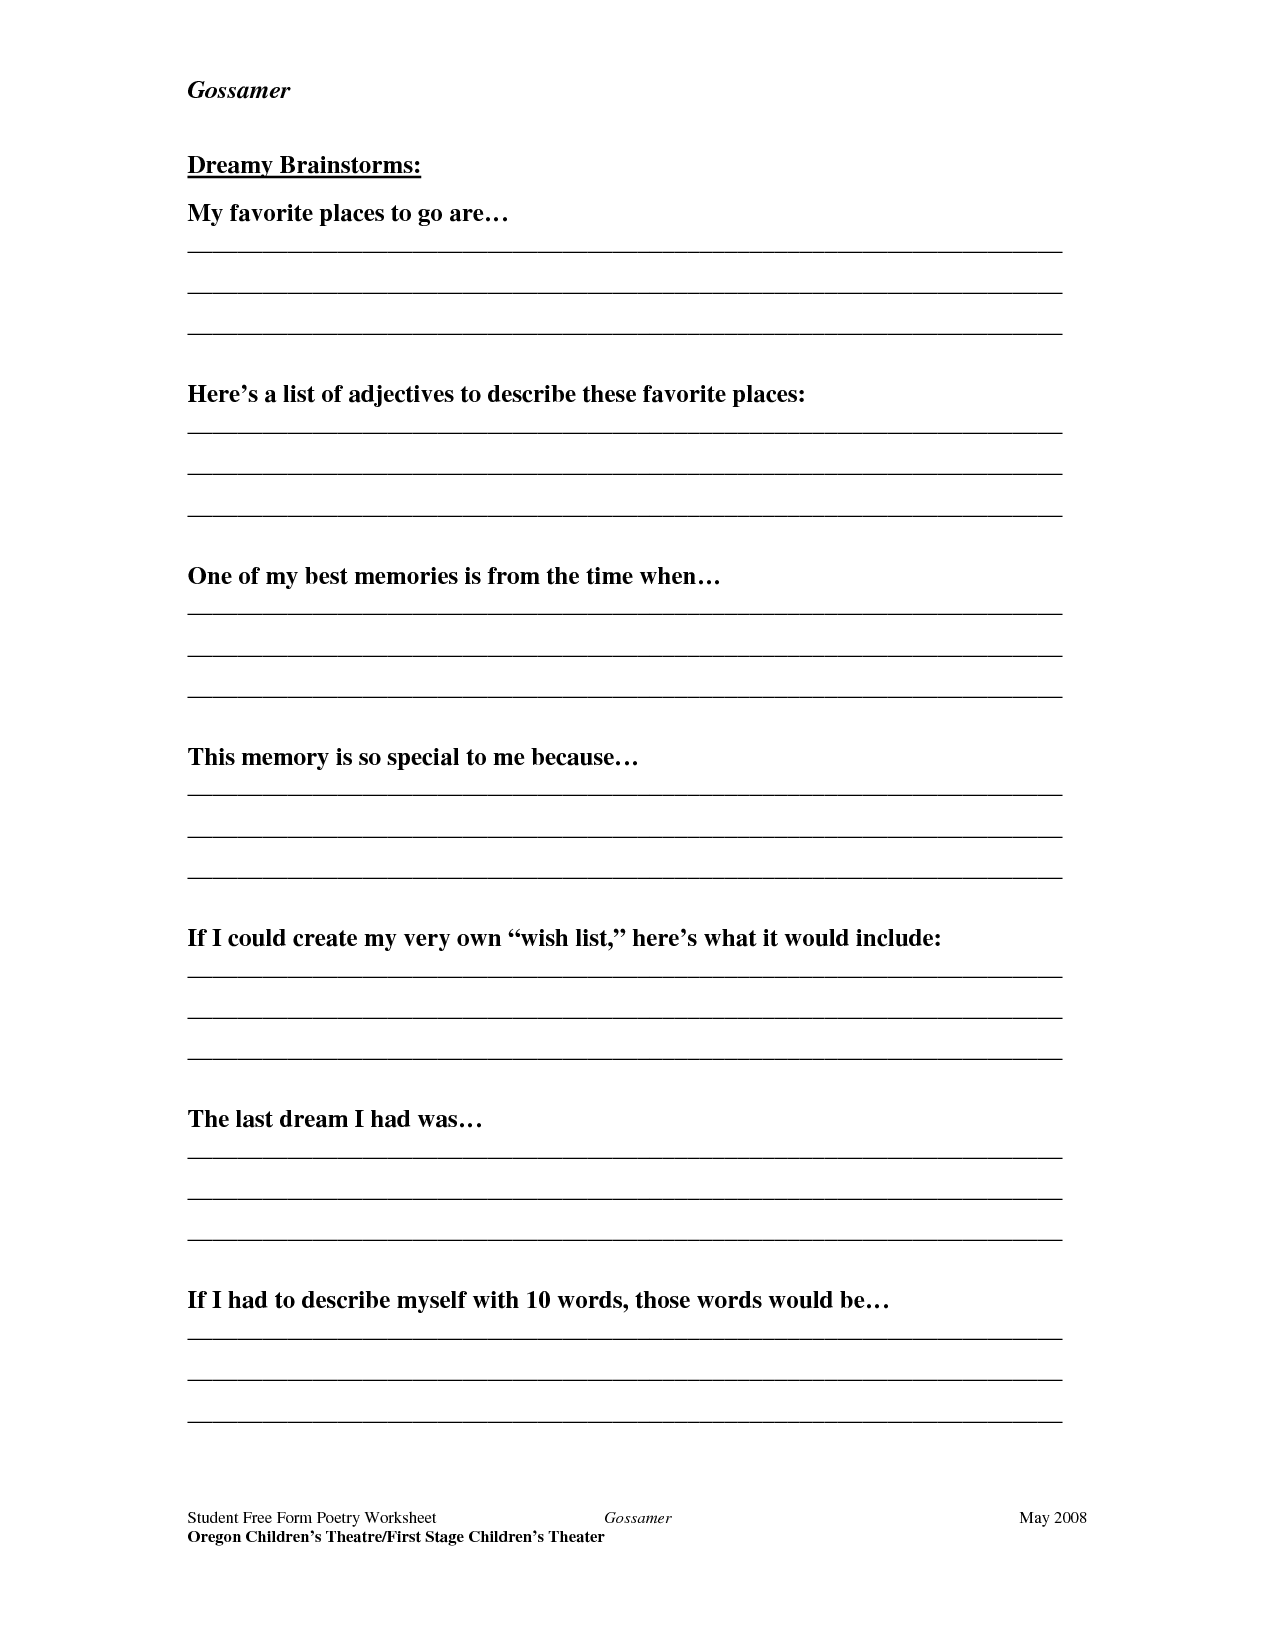 Free Printable Poetry Worksheets Image